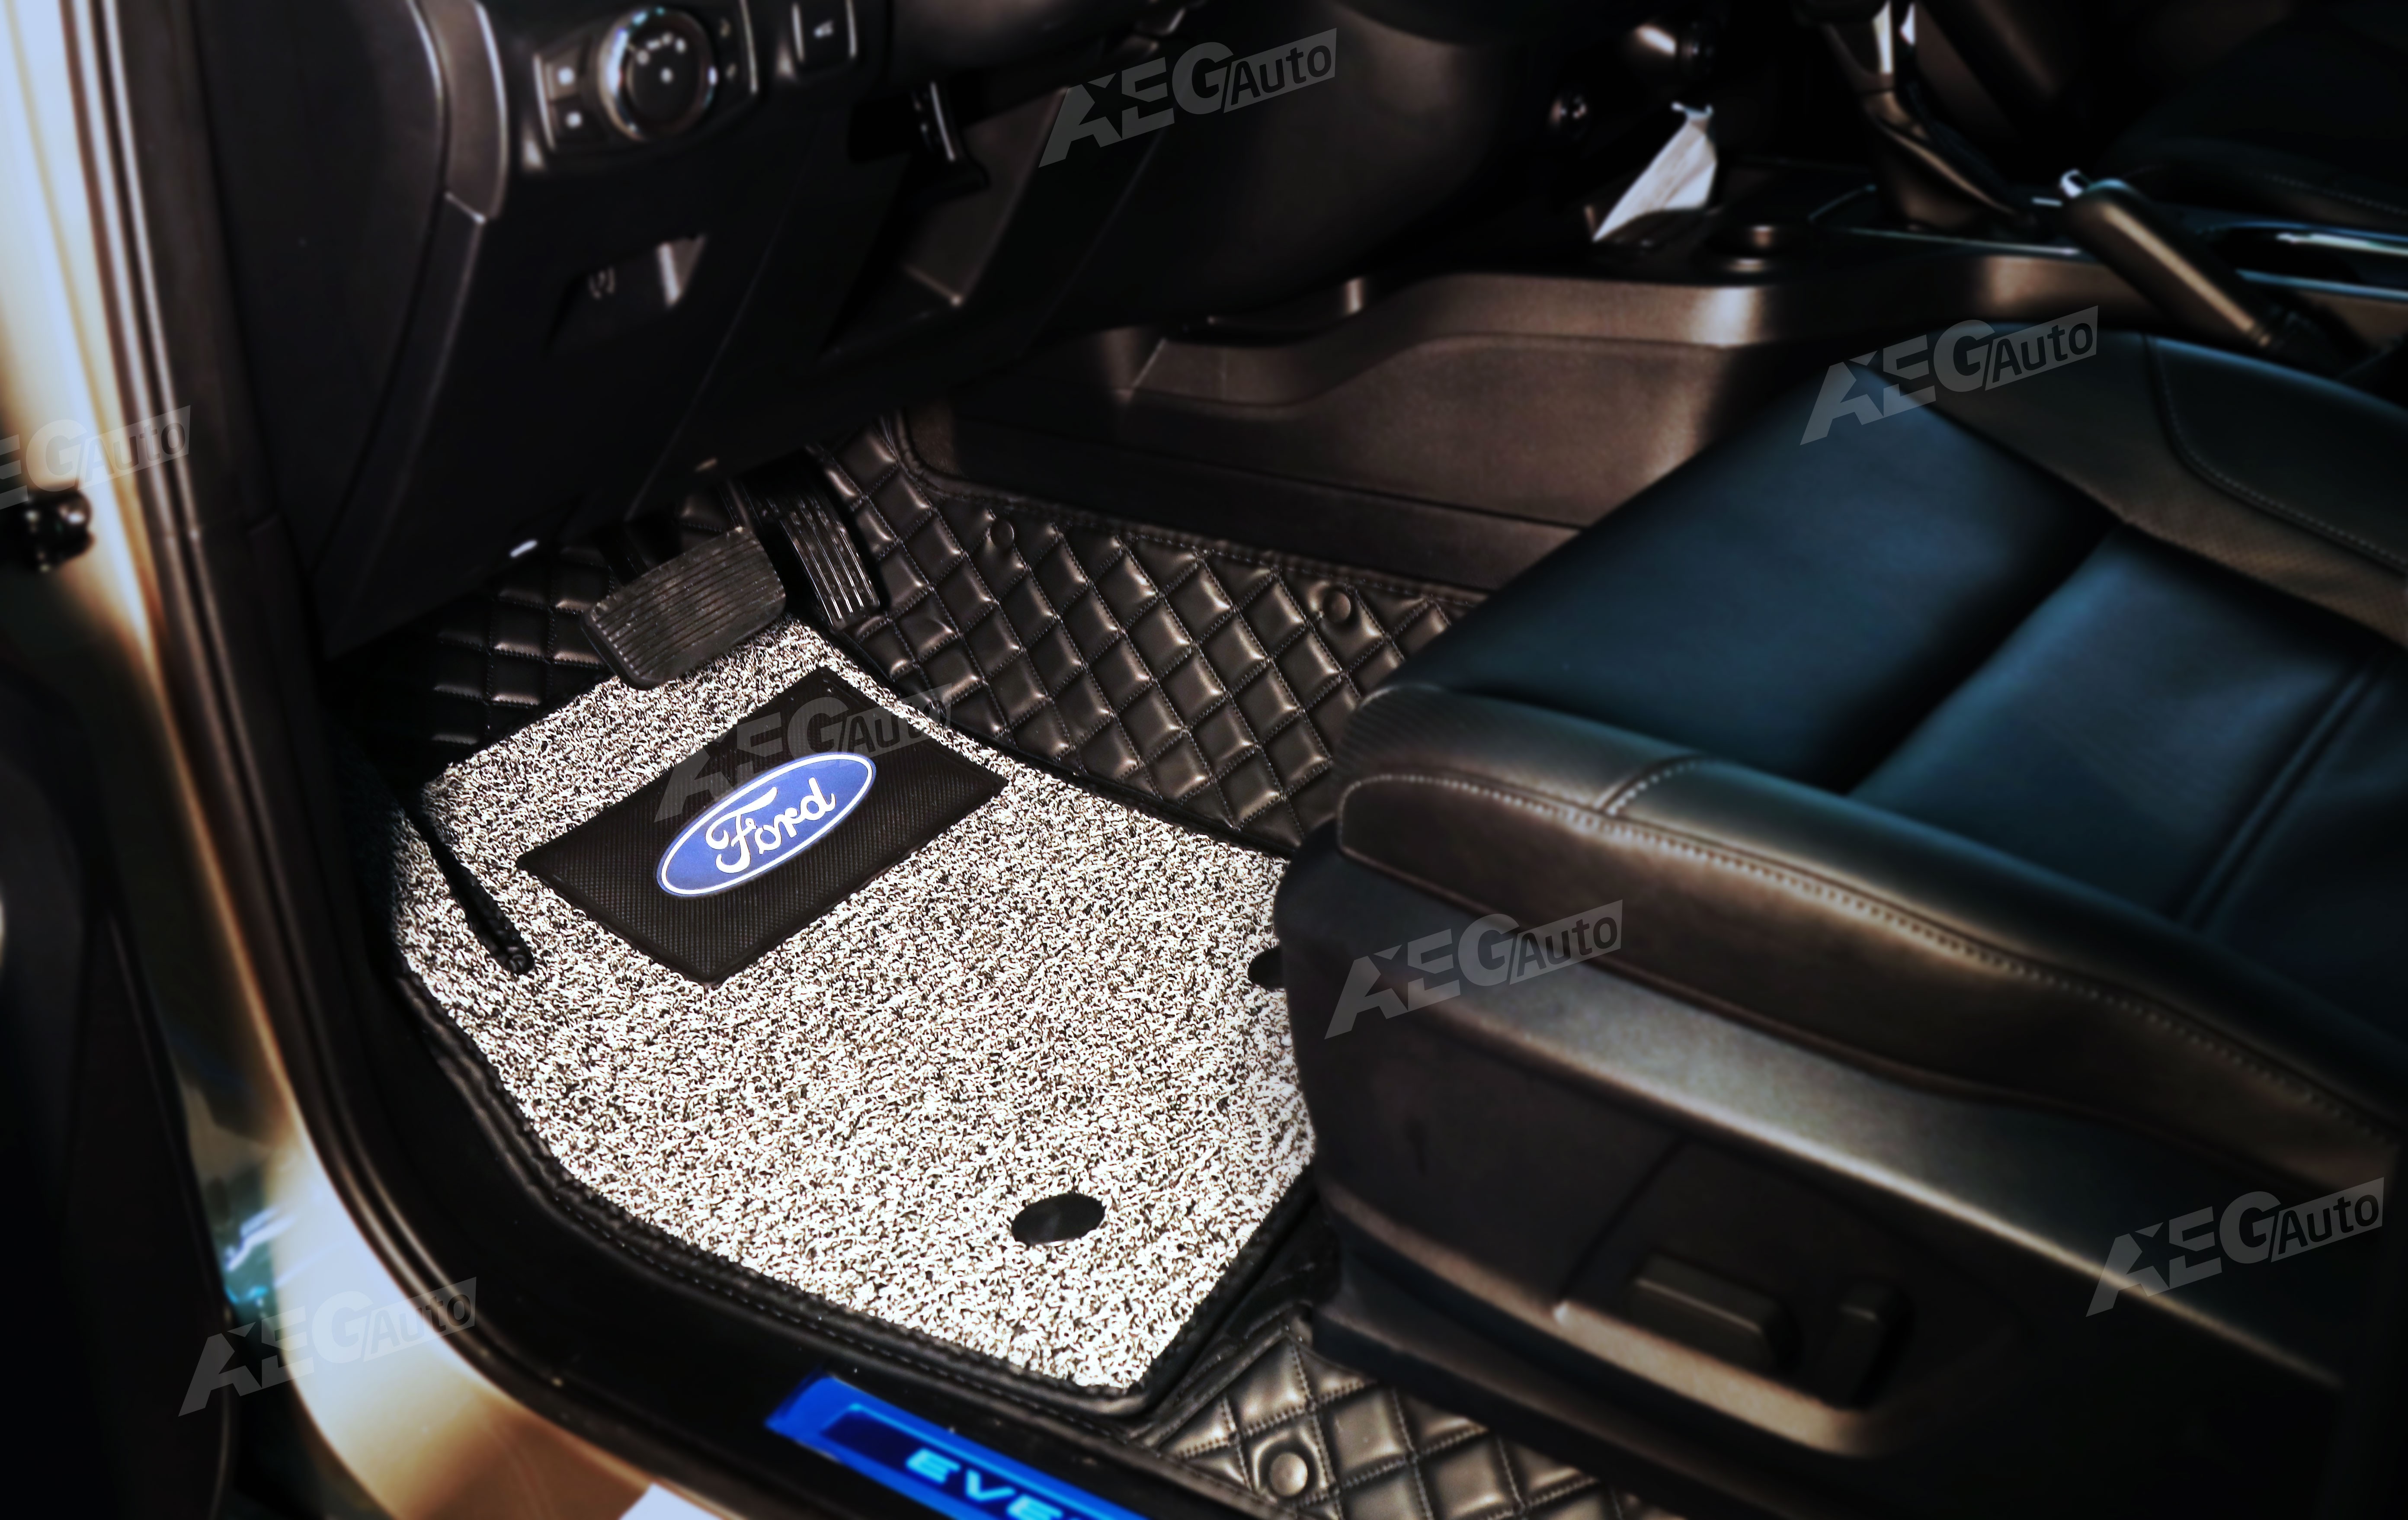 Thảm lót sàn xe Ford Everest: Thảm lót sàn xe Ford Everest mang đến sự tiện nghi và sang trọng cho chiếc xe của bạn. Với chất liệu bền, dễ dàng vệ sinh, chiếc thảm sẽ bảo vệ sàn xe khỏi những vết trầy xước và bụi bẩn. Đến và khám phá ngay hình ảnh liên quan đến sản phẩm đầy hấp dẫn này!